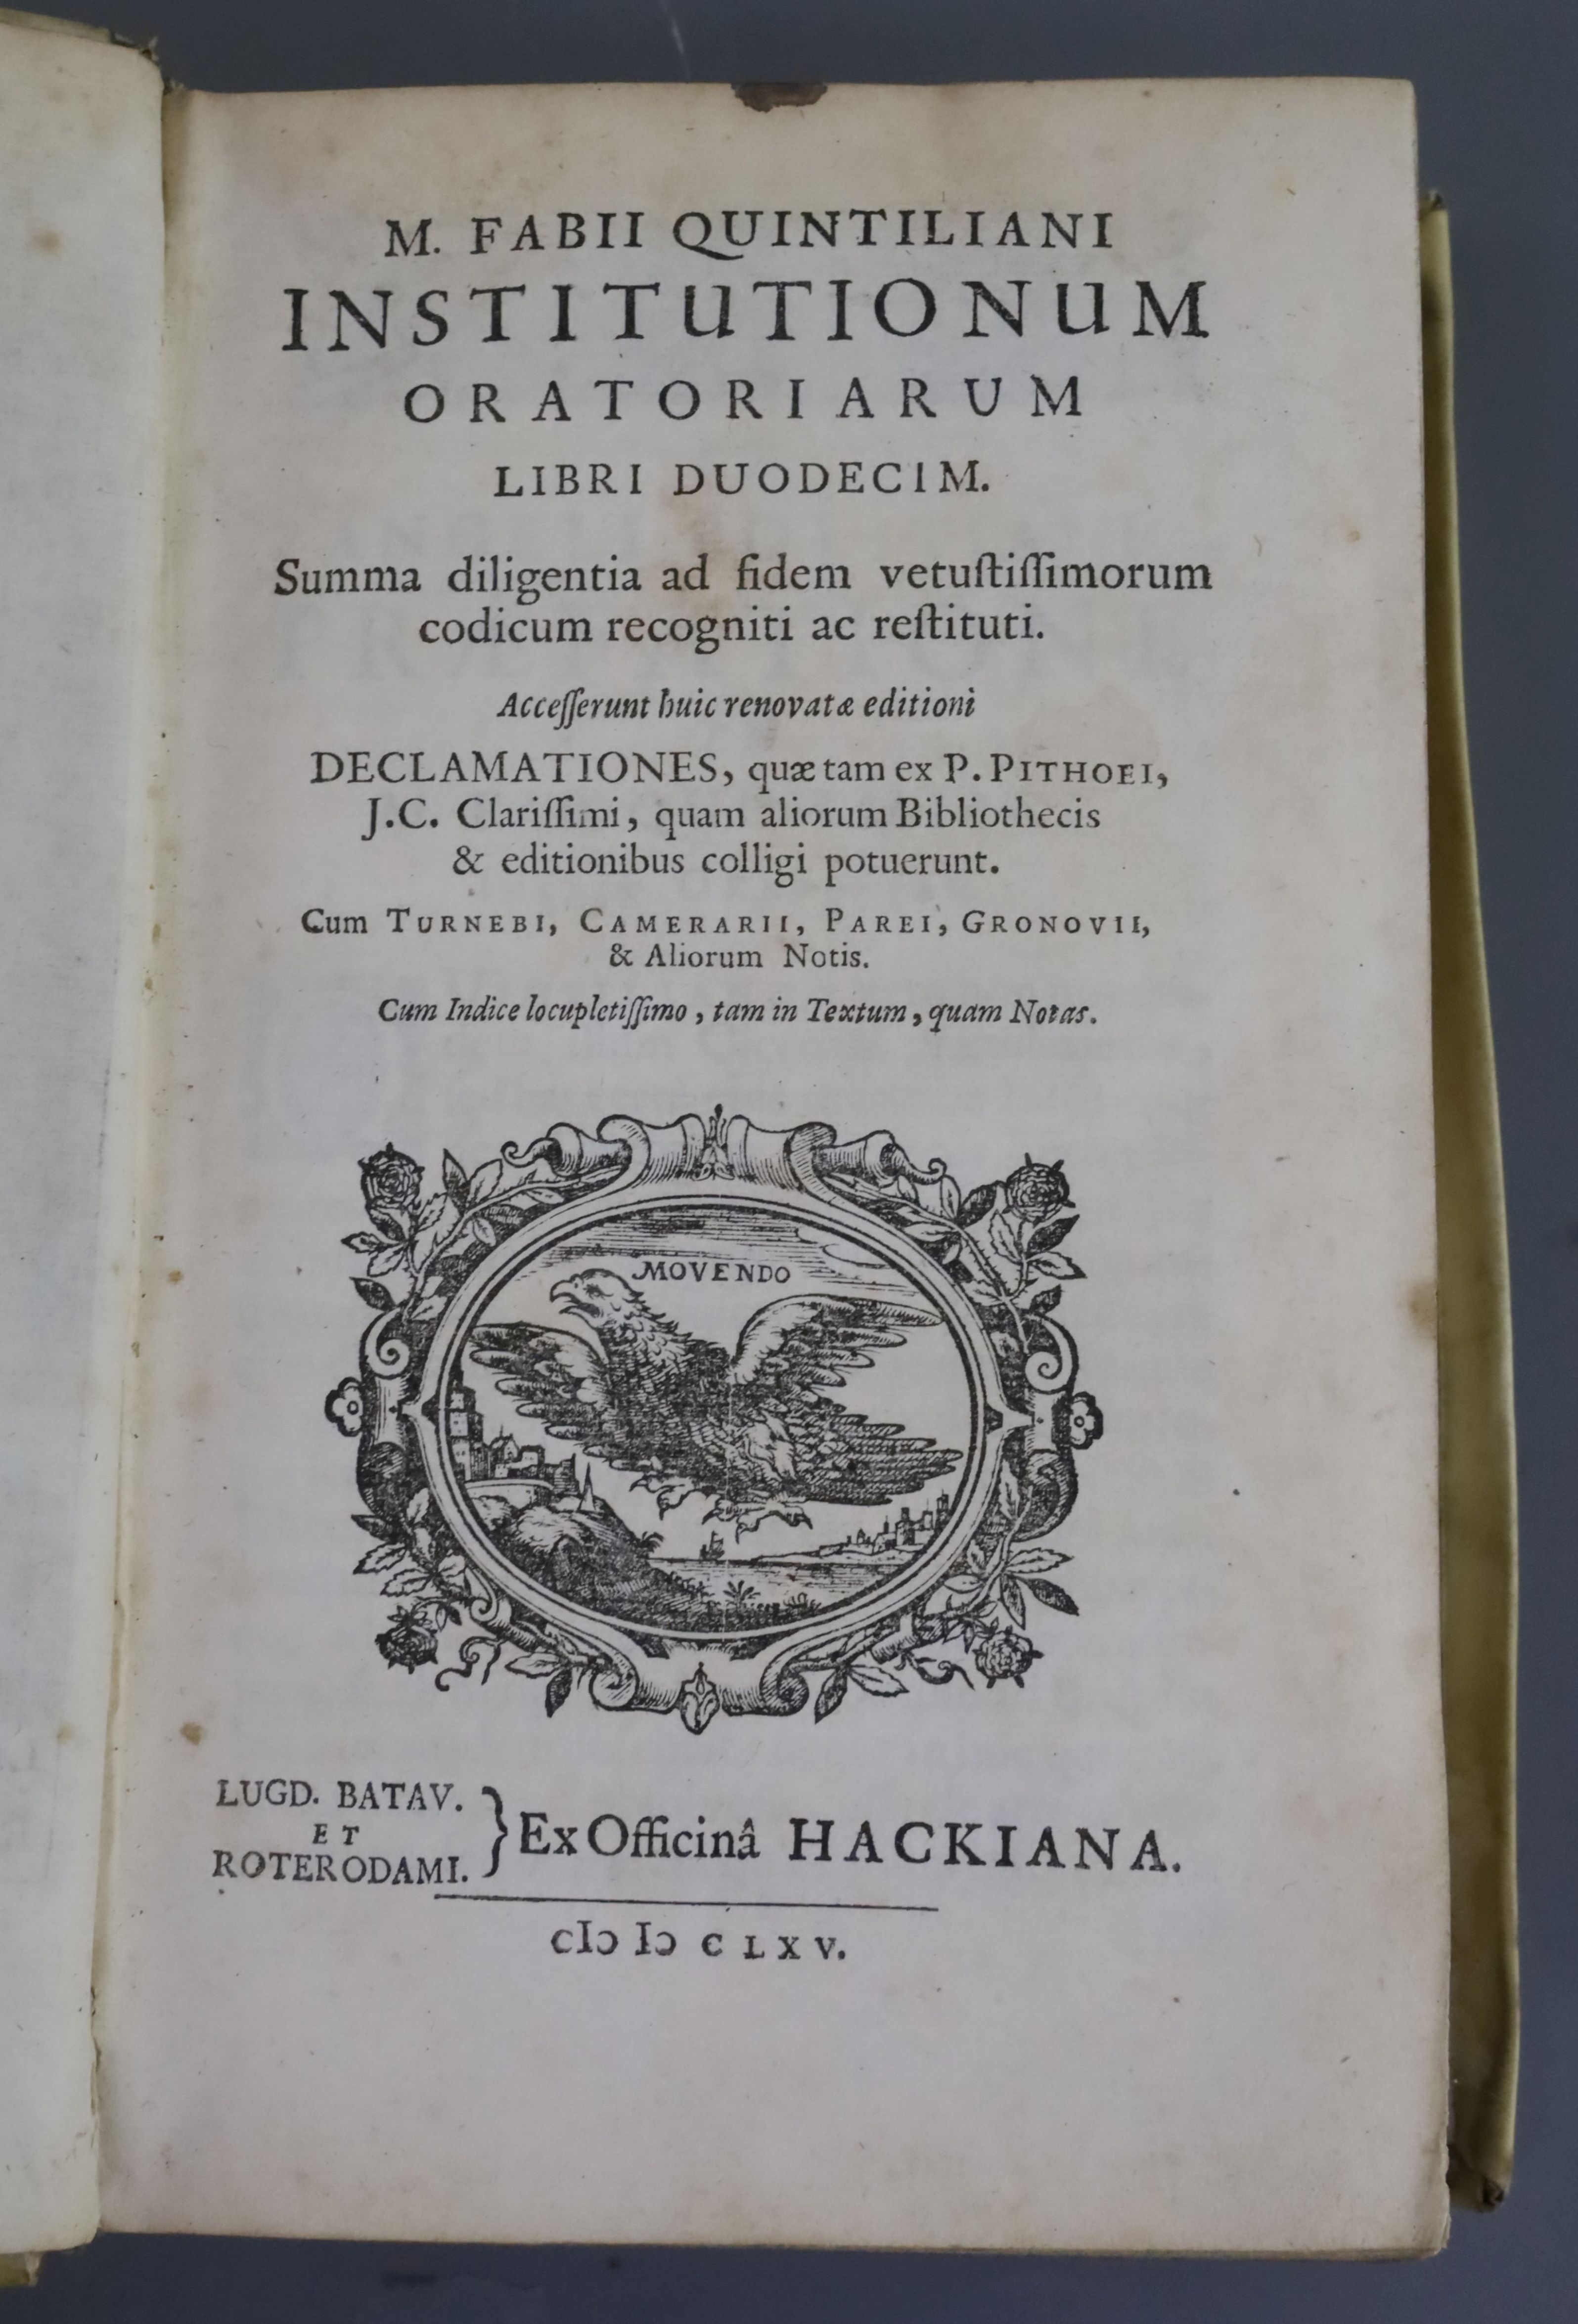 Quintilianus, Marcus Fabius - Institutiones oratoriae. "Institutionum oratoriarum libri XII, vol - Image 2 of 3